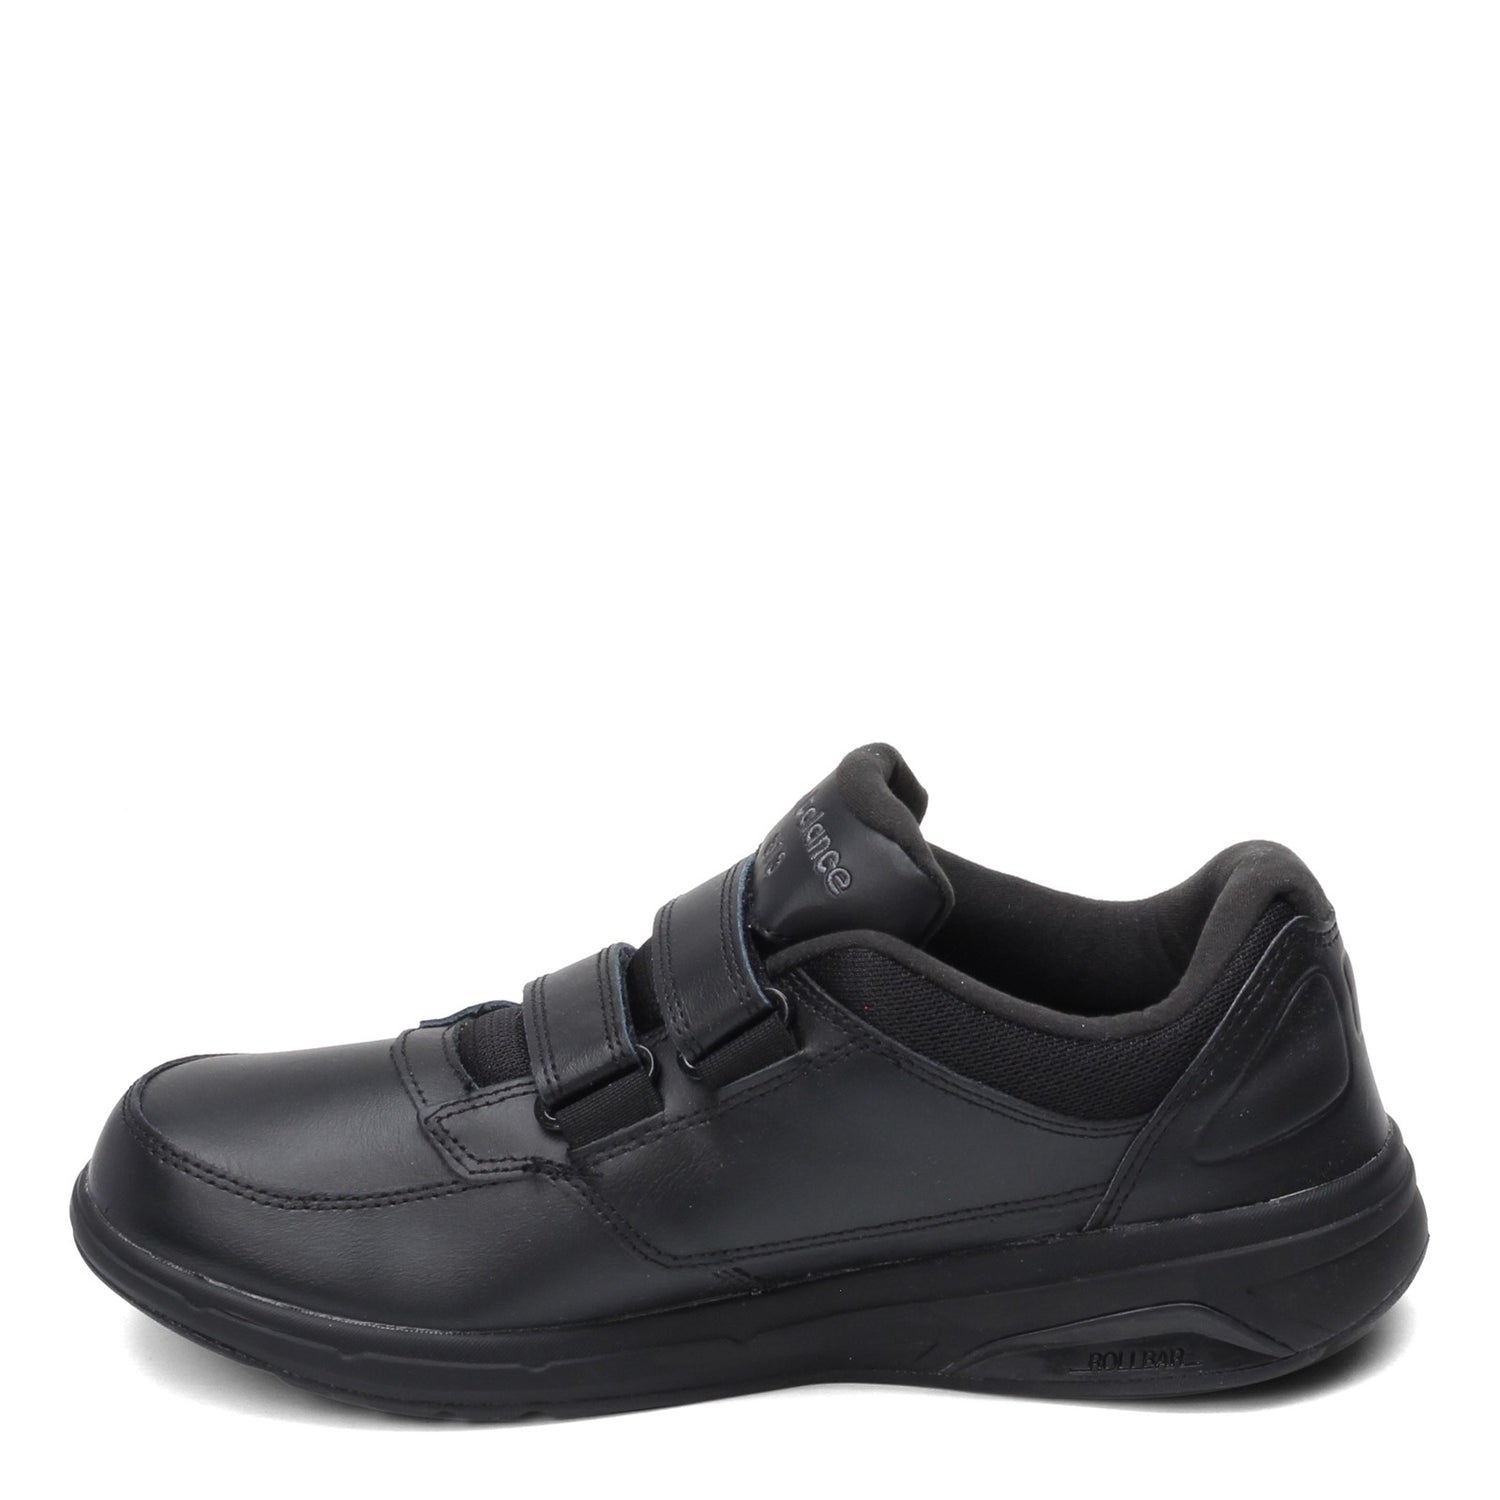 Peltz Shoes  Men's New Balance 813 Strap Walking Shoe BLACK MW813HBK